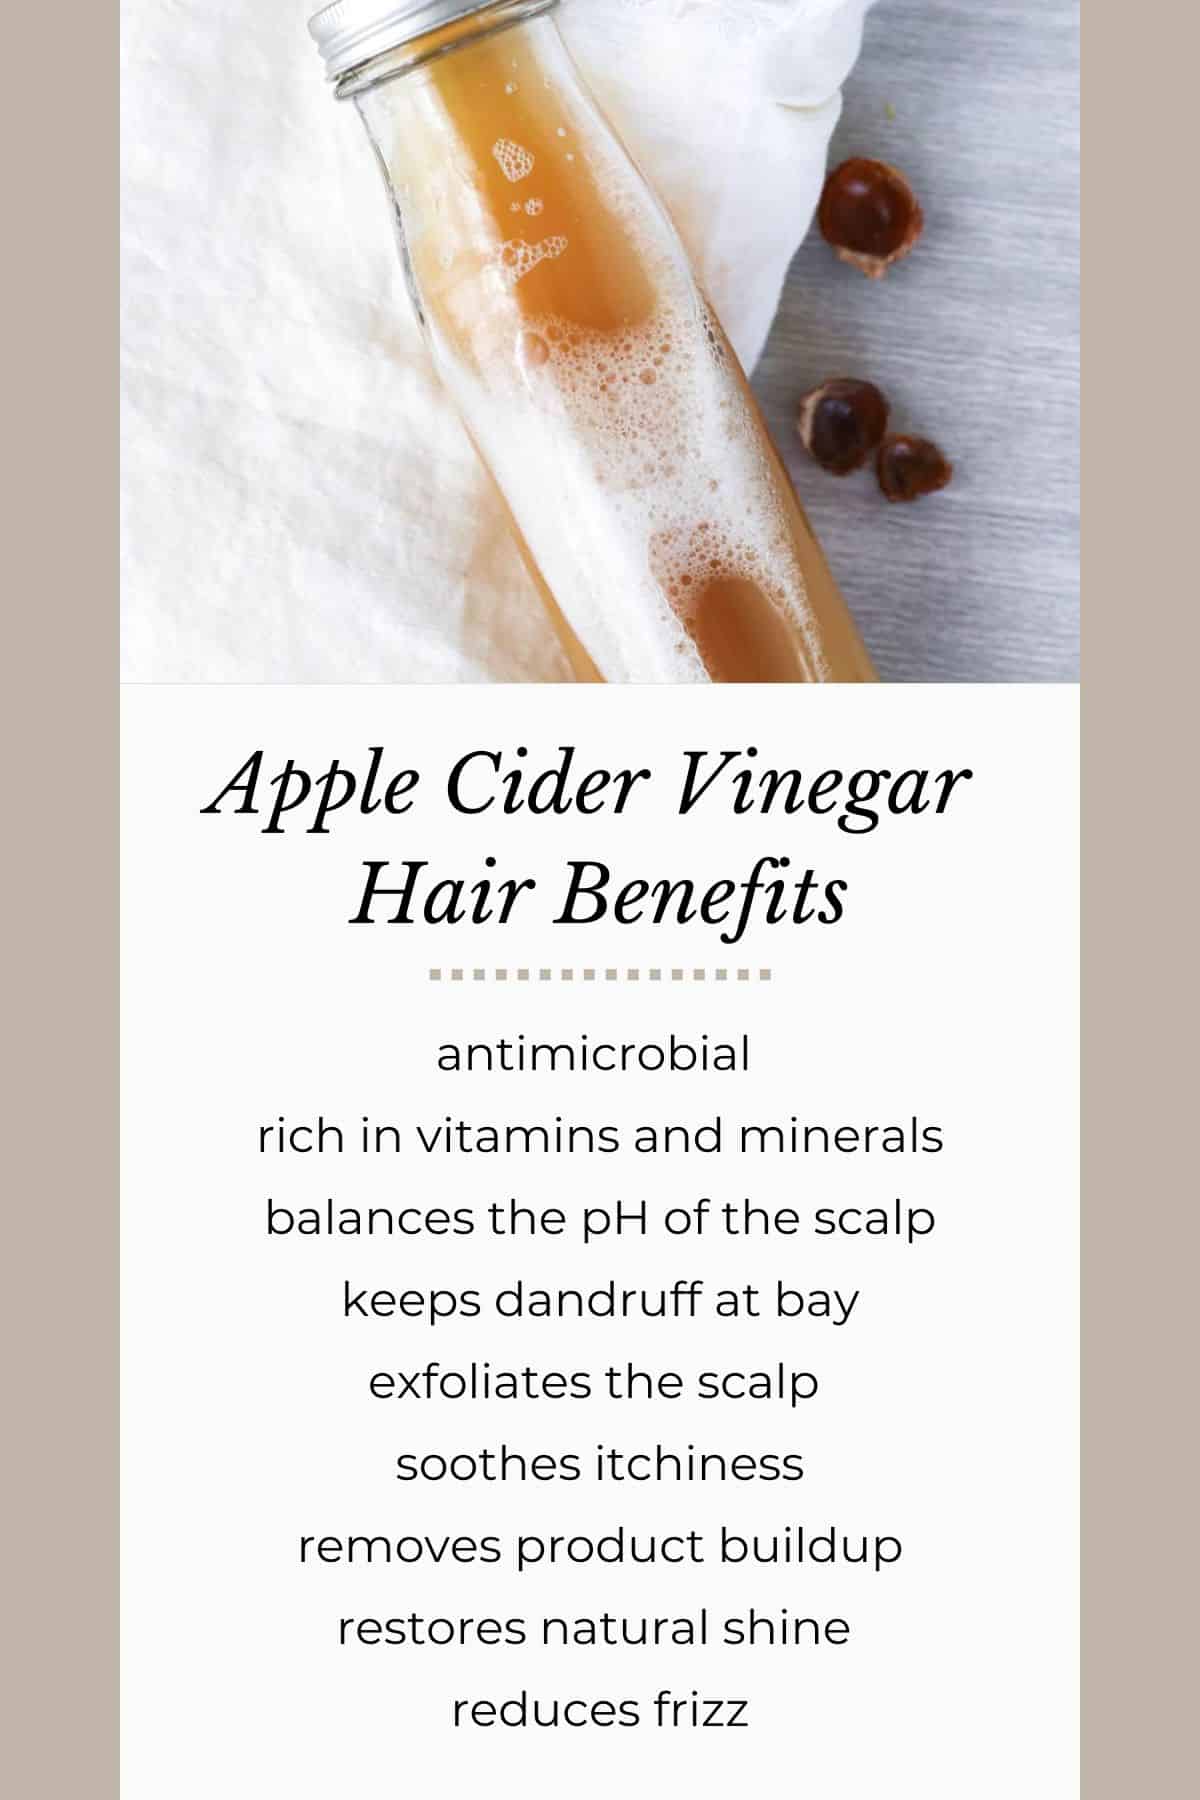 Apple Cider Vinegar Benefits for Hair